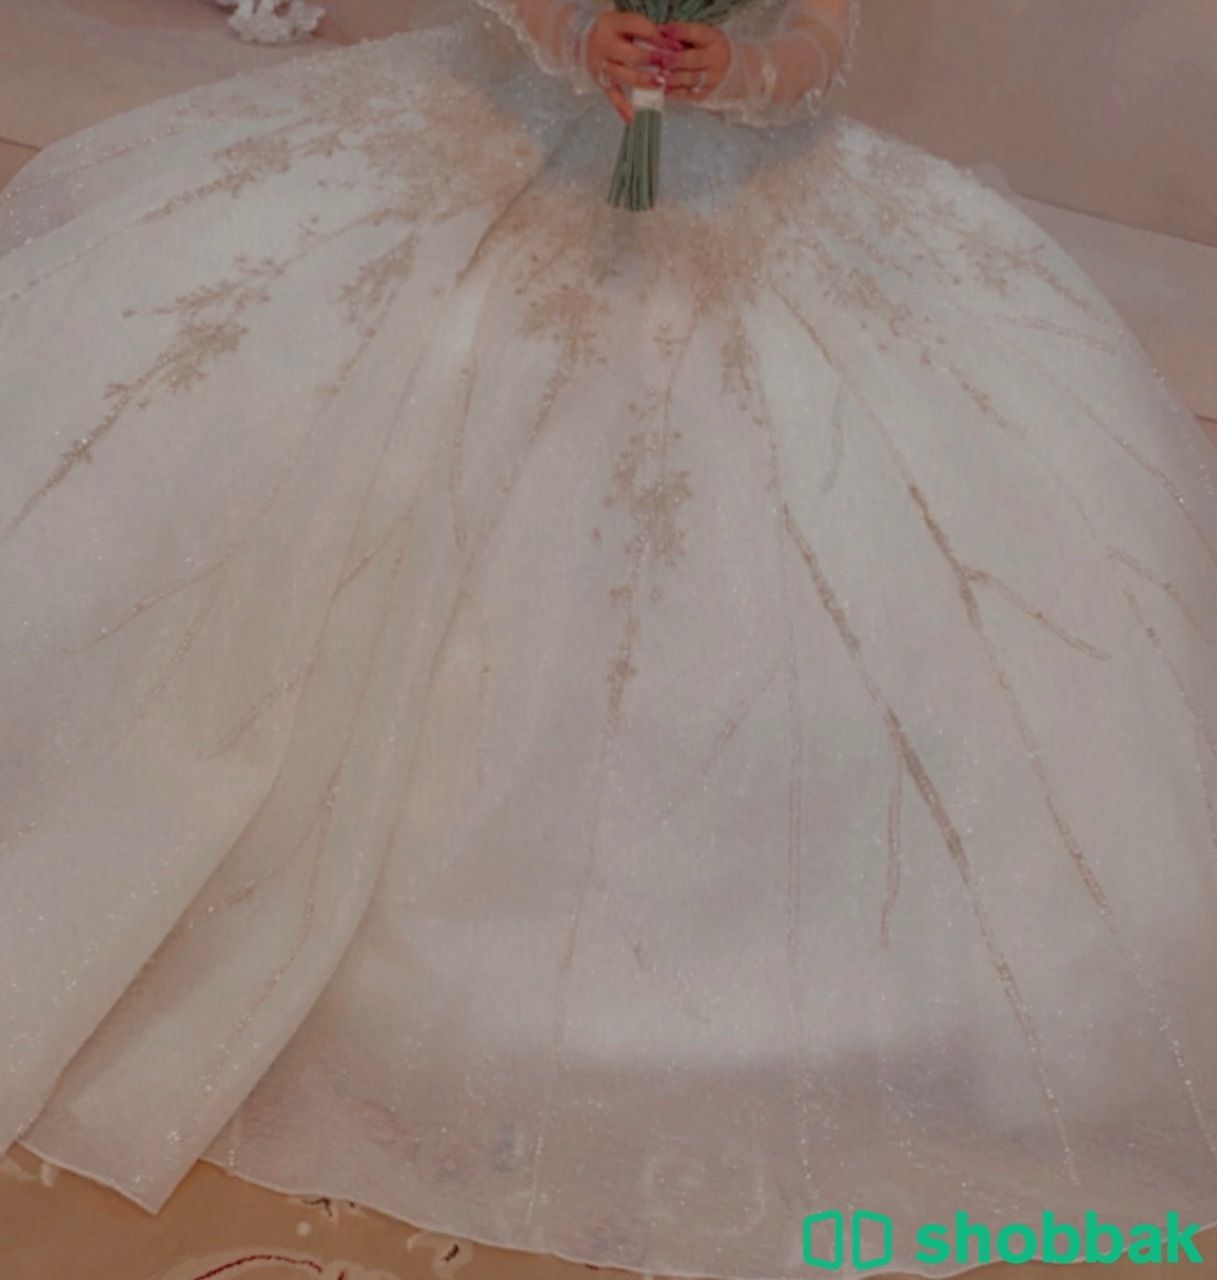 فستان عروس Shobbak Saudi Arabia